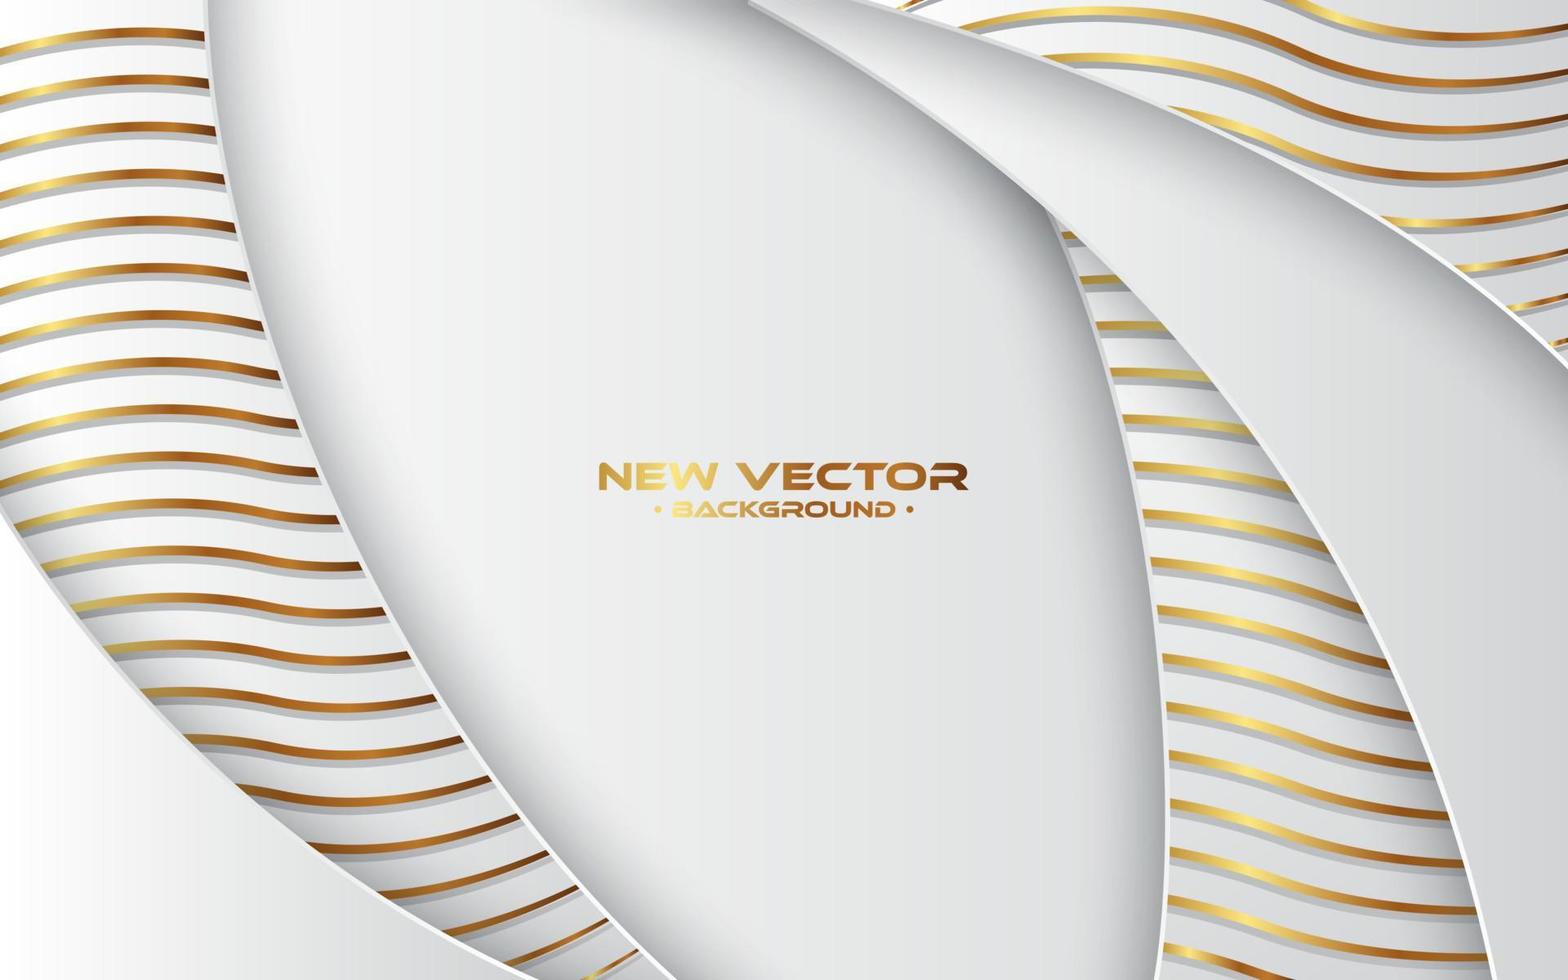 sfondo di taglio di carta di lusso, decorazione astratta, motivo dorato, illustrazione vettoriale 3d. modello di copertina bianco e grigio, forme geometriche, sfondo minimal moderno.